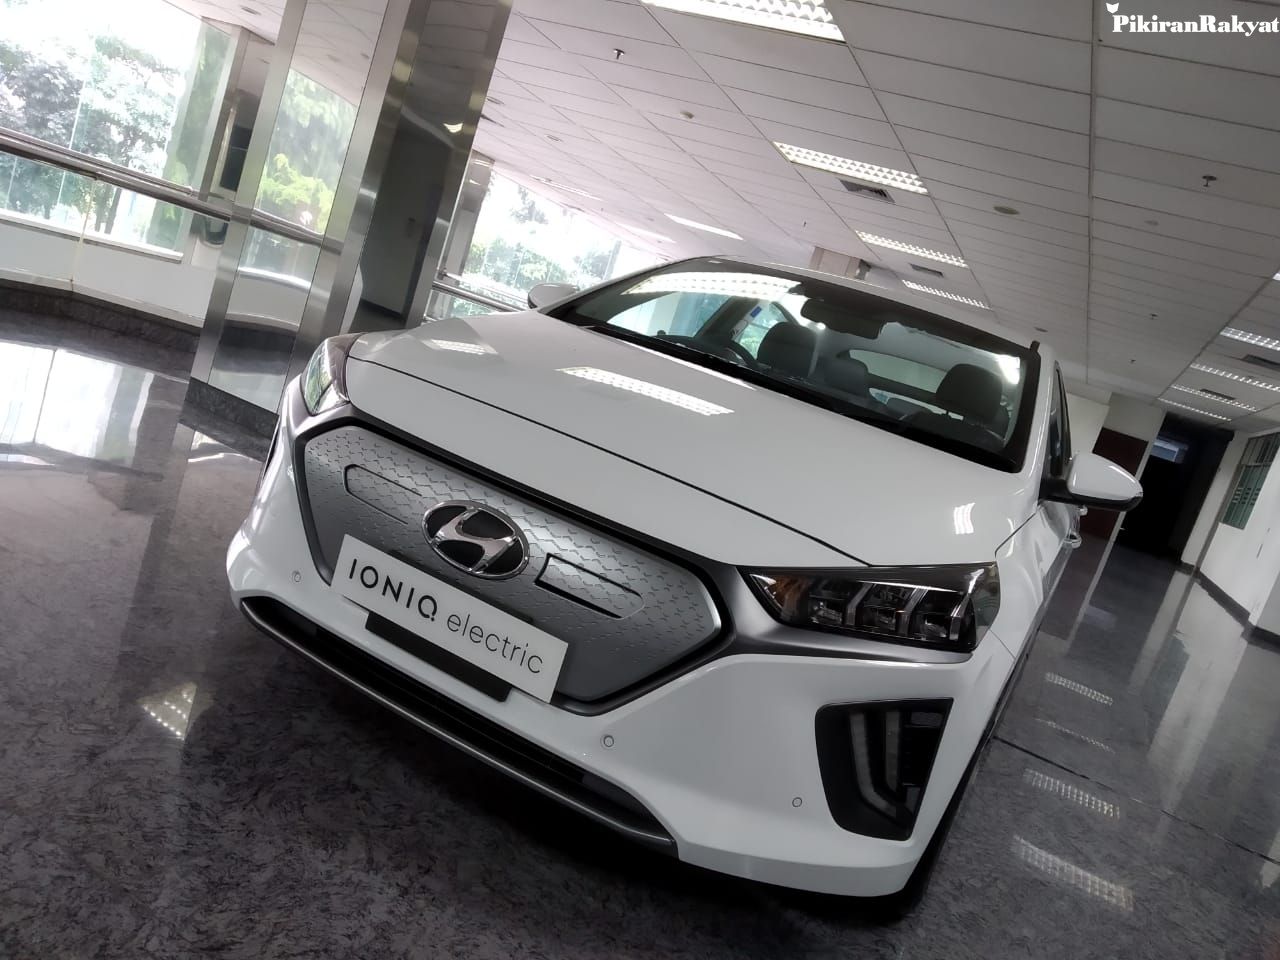 Spesifikasi Dan Harga Hyundai Ioniq Mobil Listrik Termurah Di Indonesia Pikiran Rakyat Com